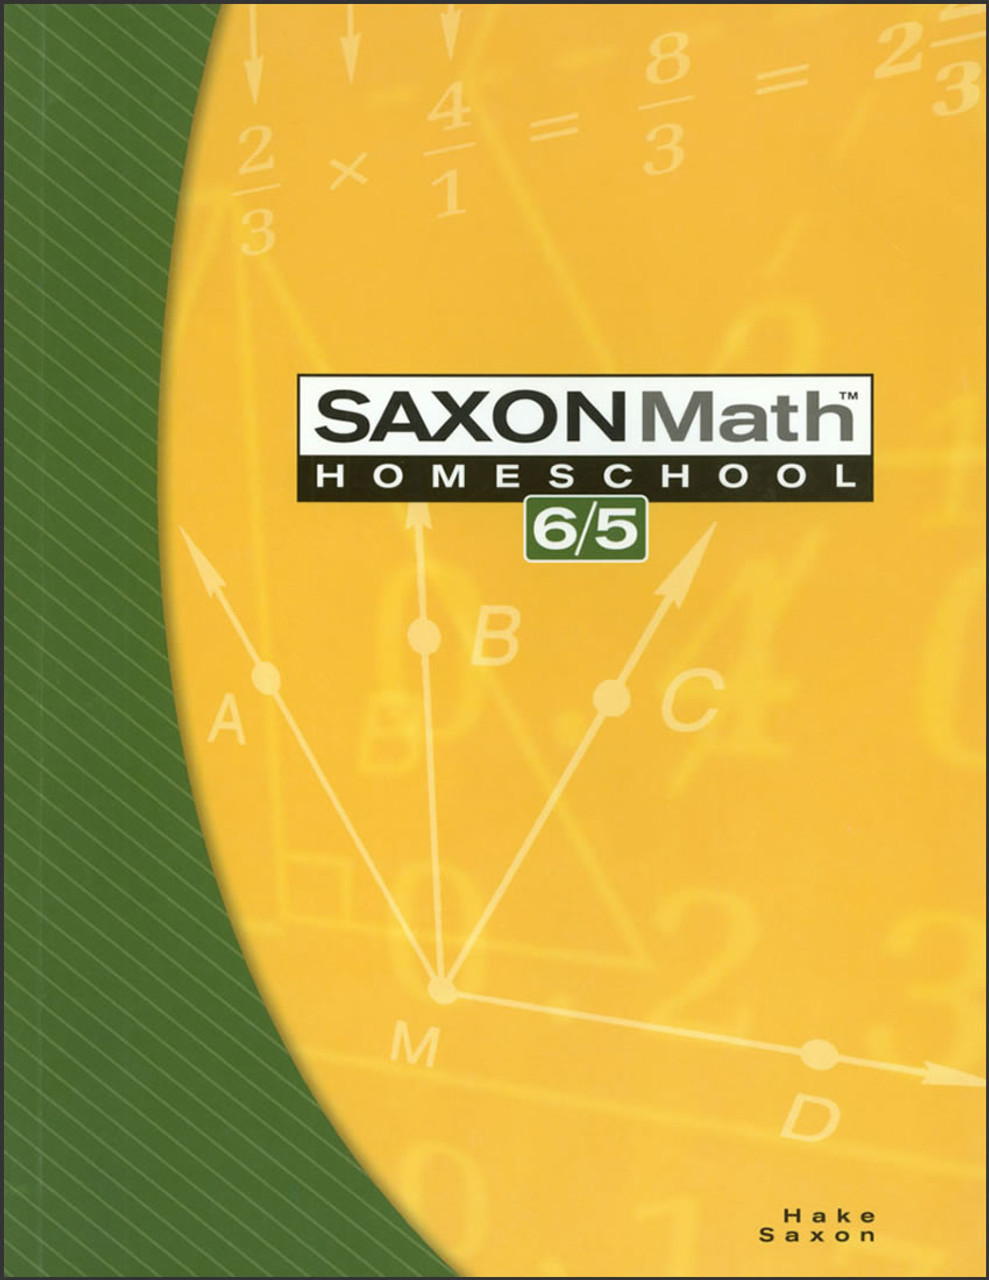 Saxon Math Homeschool 6/5, 3rd edition